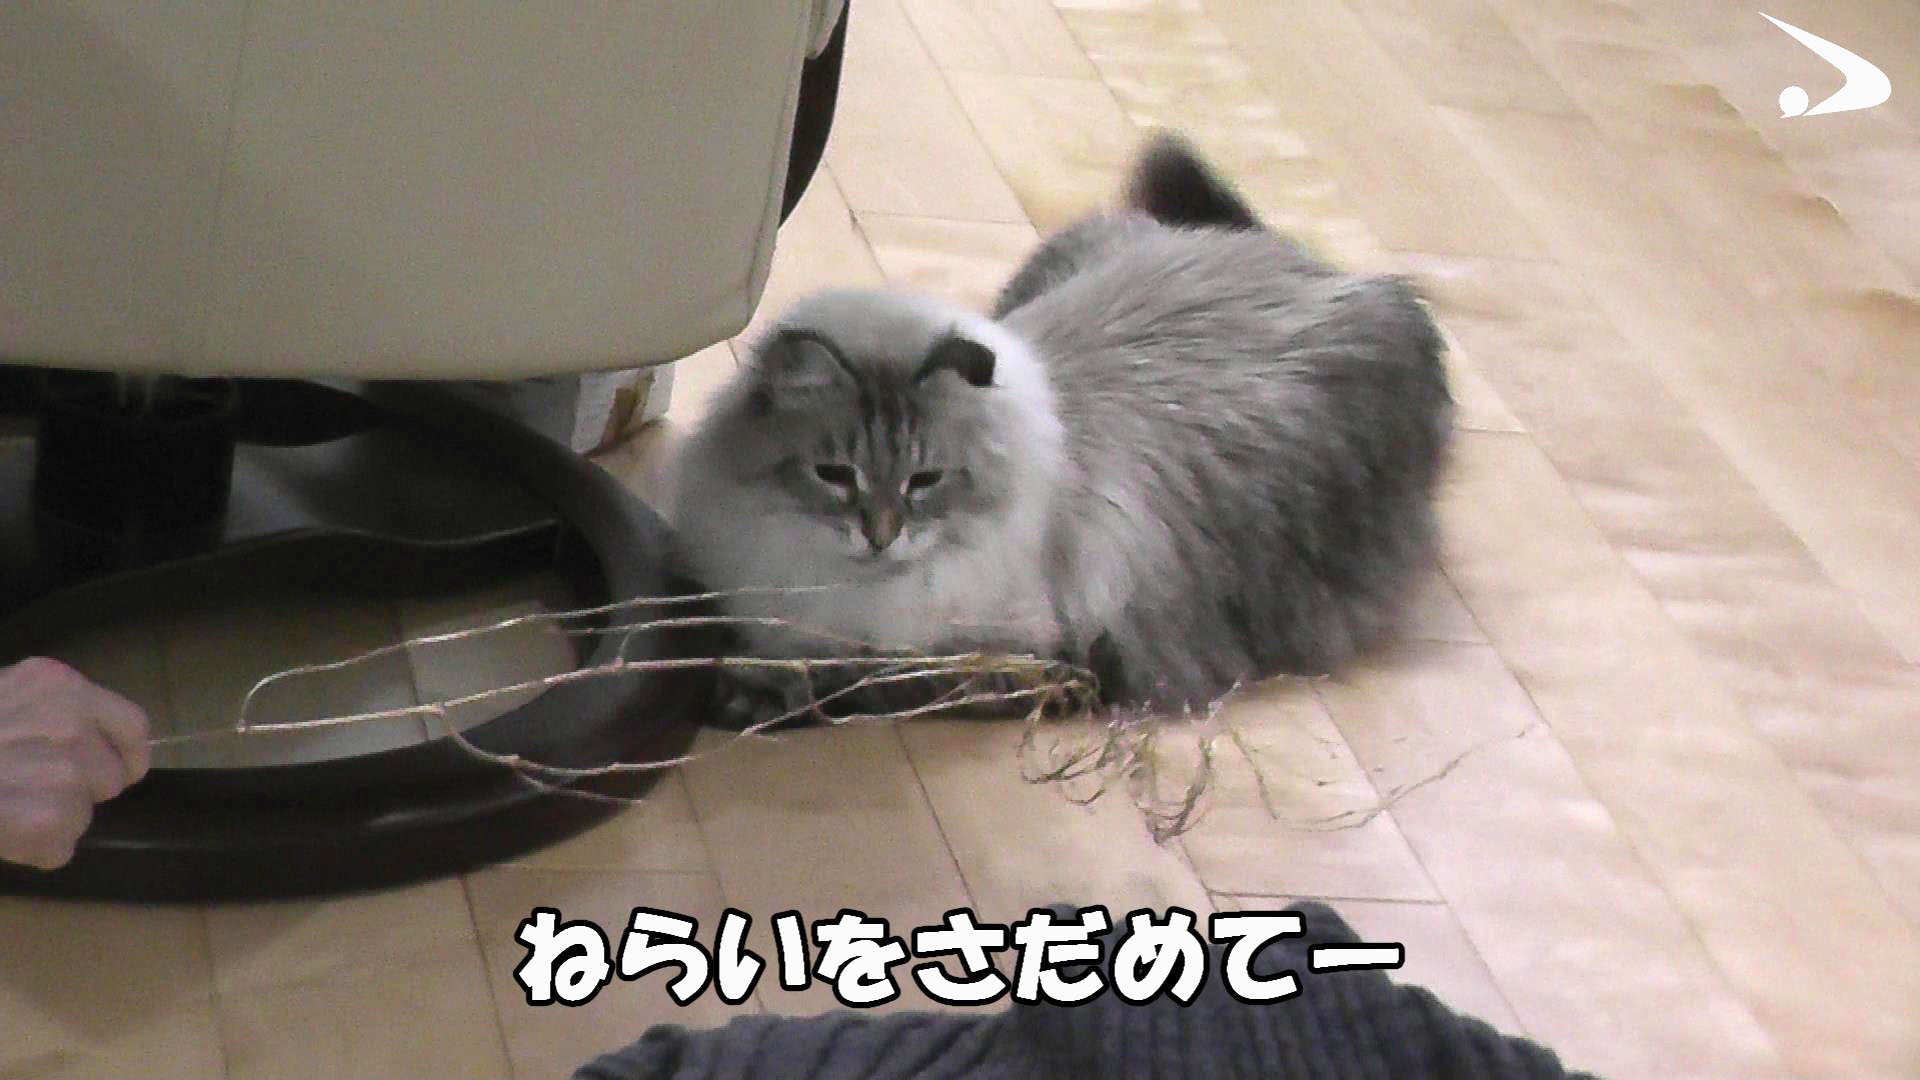 「猫に罪なし」 プーチン氏贈呈「ミール」の動画公開 秋田 - 産経